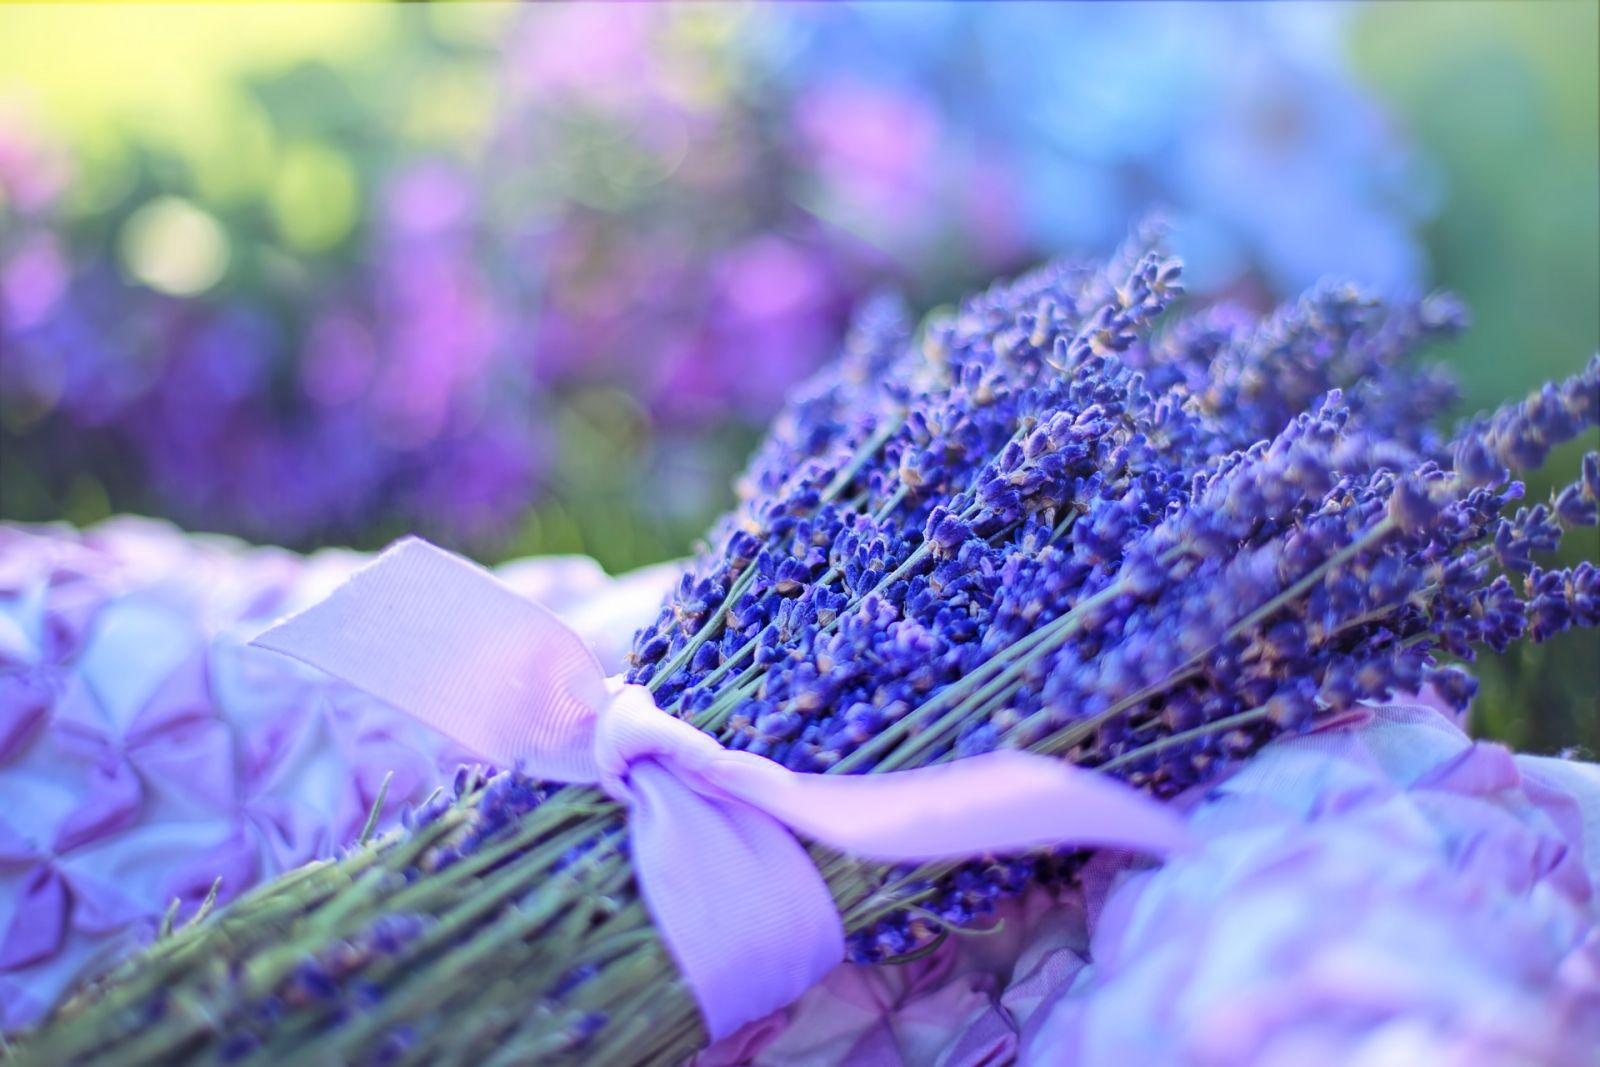 Tổng hợp hình ảnh hoa lavender khô đẹp nhất – Loài hoa may mắn, hạnh phúc - [Kích thước hình ảnh: 1600x1067 px]